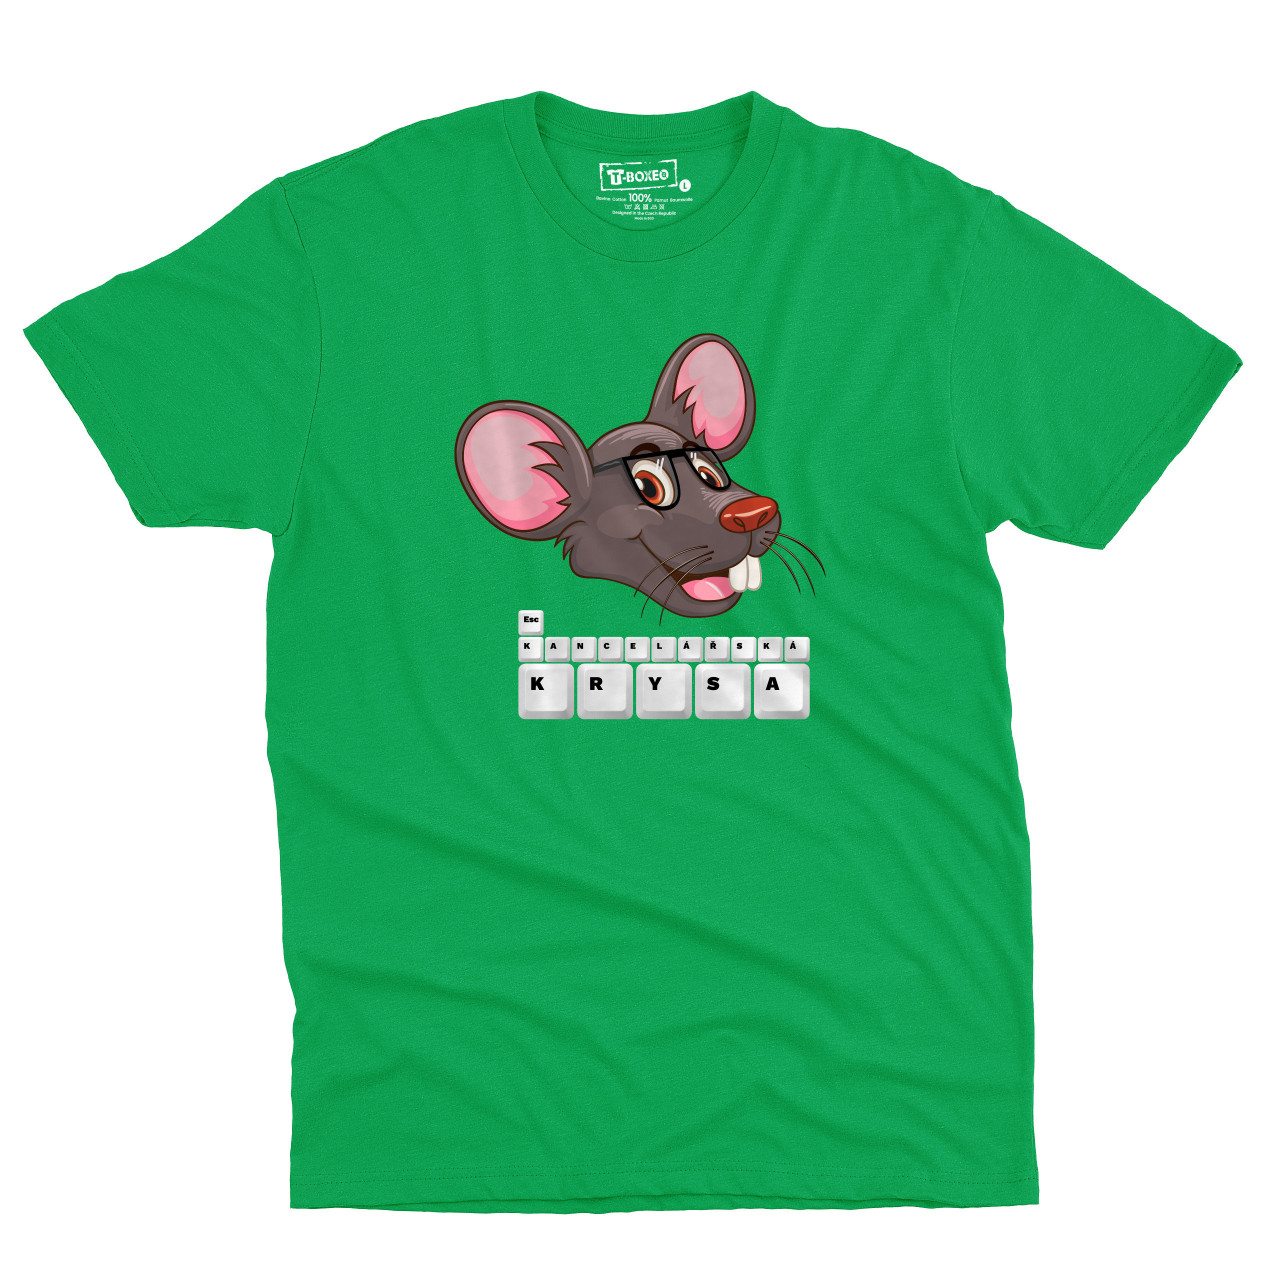 Pánské tričko s potiskem “Kancelářská krysa”